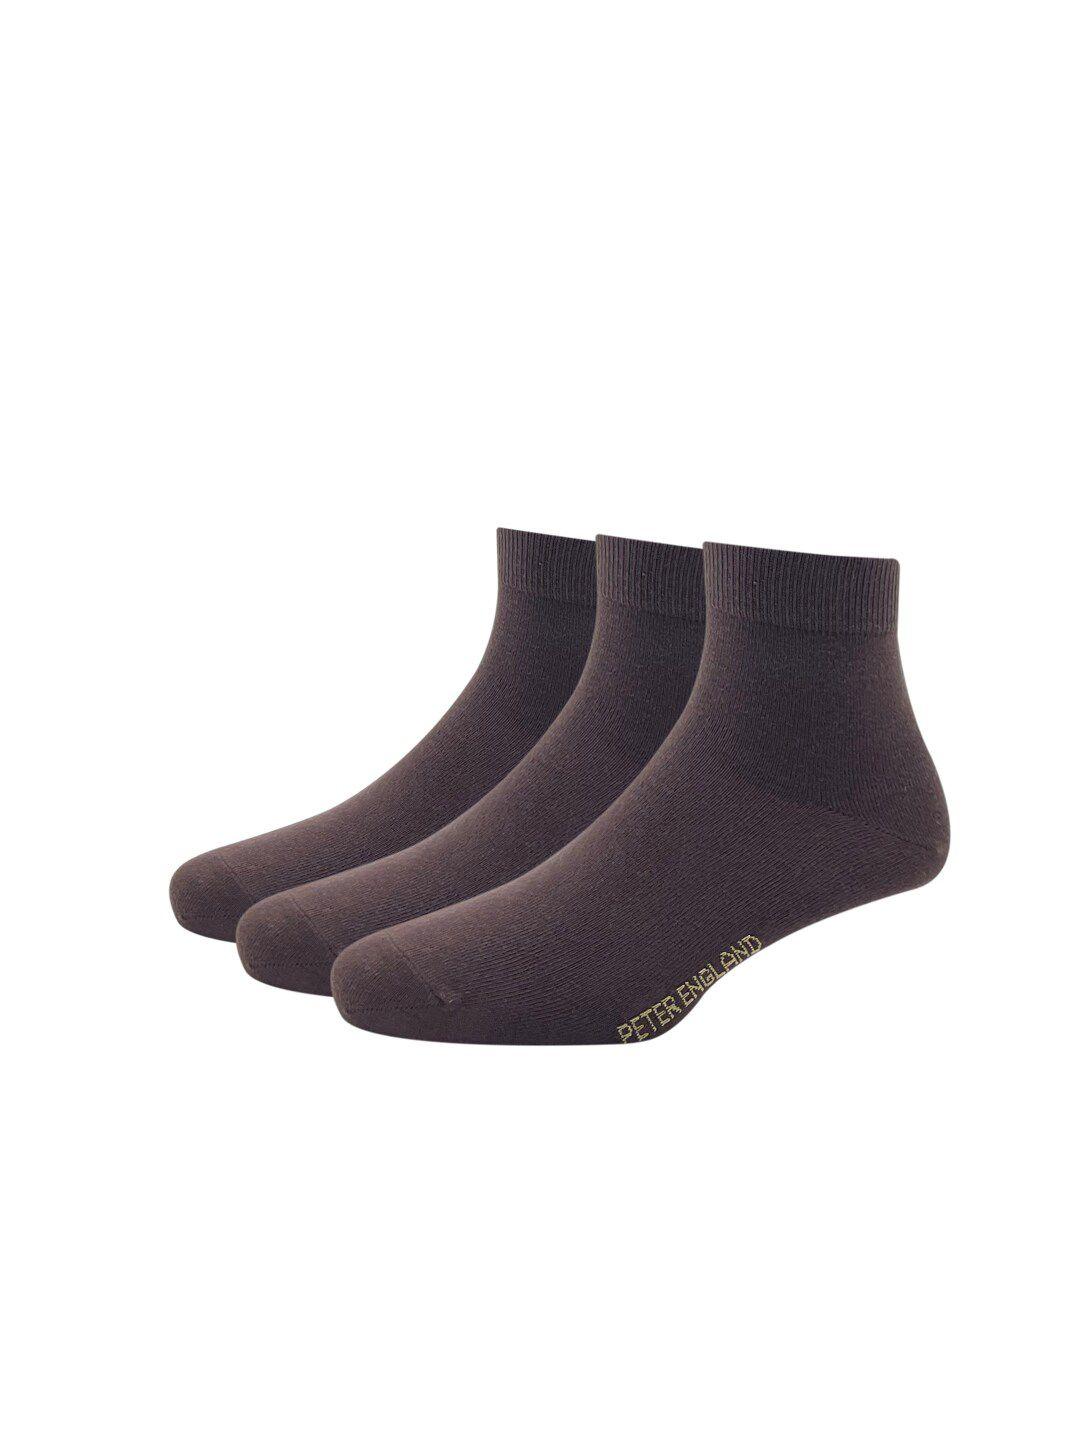 peter-england-men-brown-pack-of-3-cotton-full-length-socks